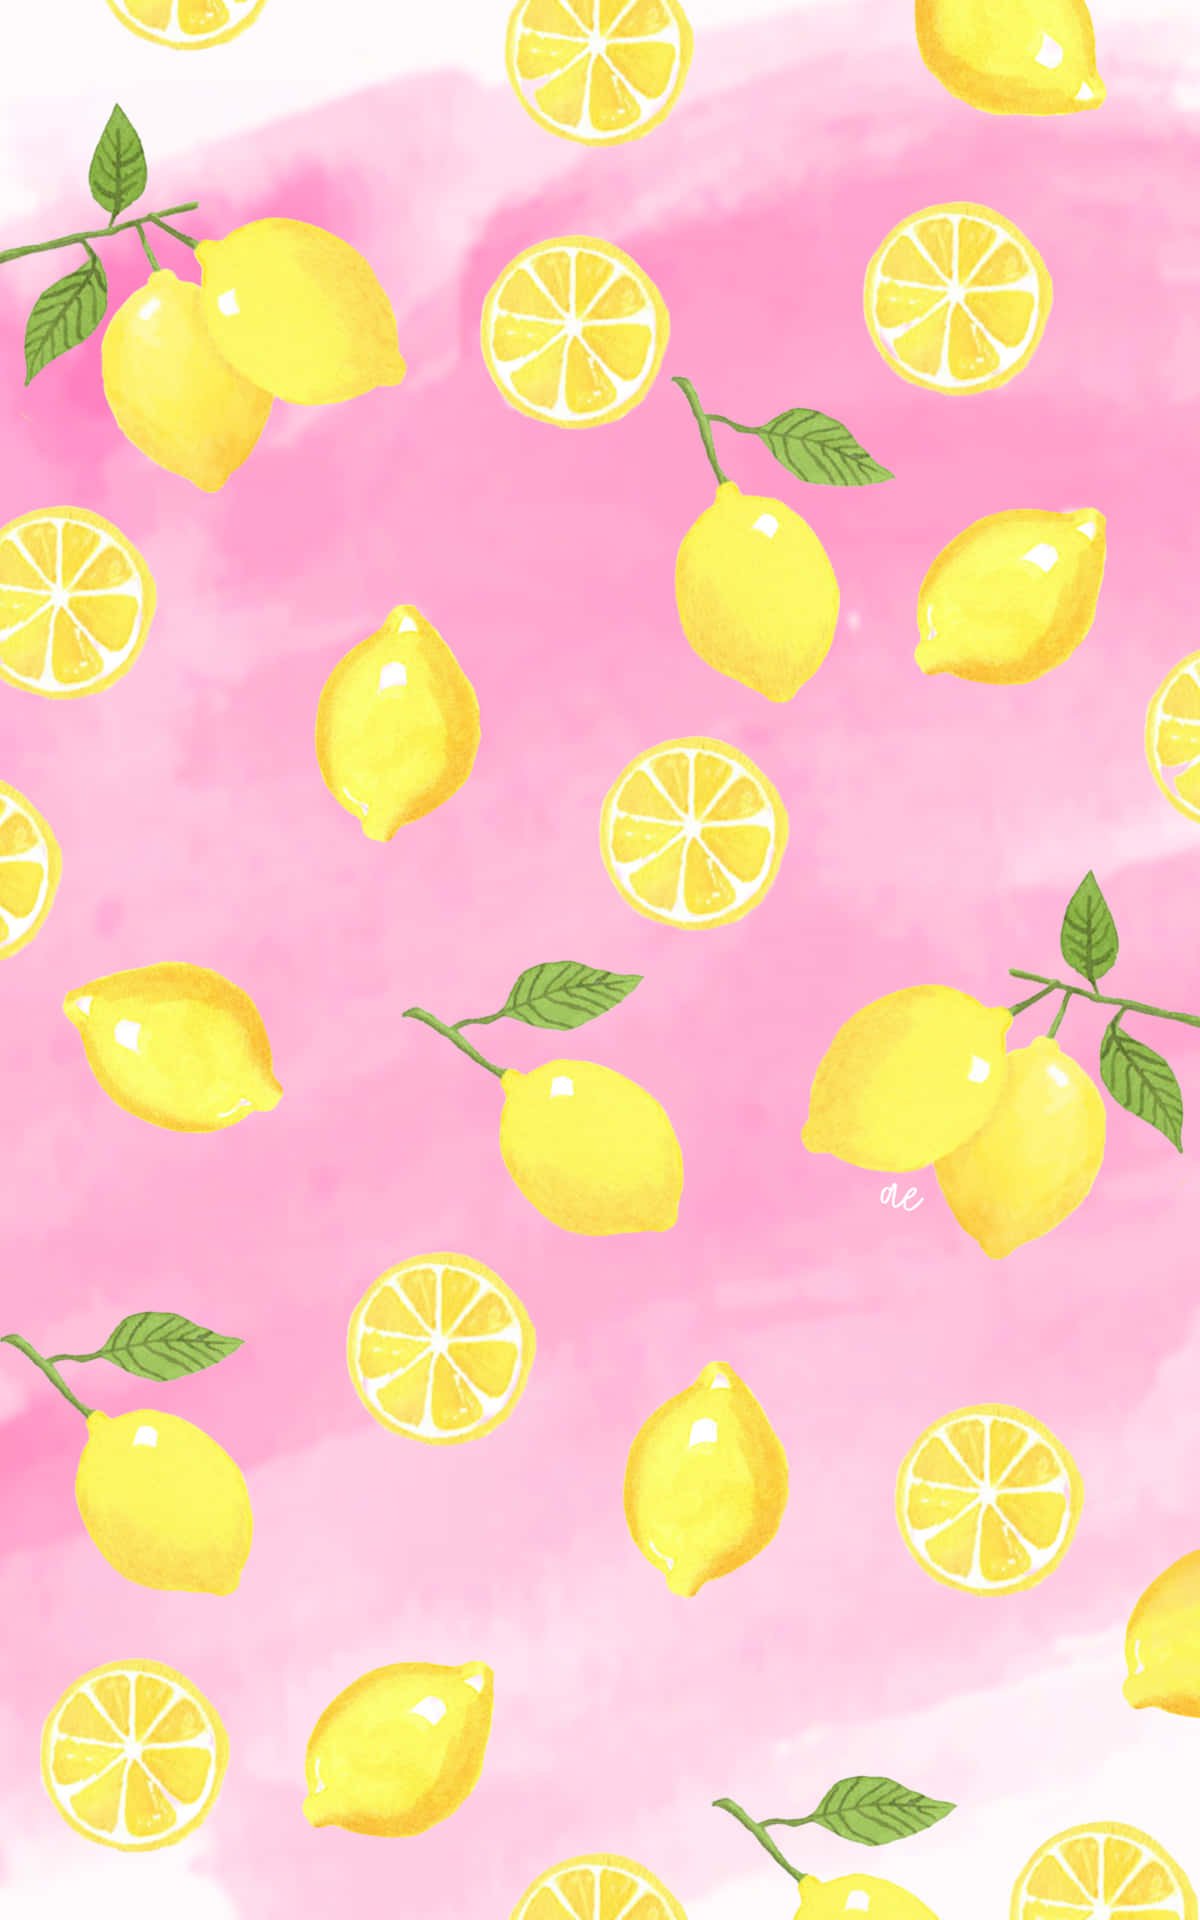 Download Lemon iPhone Wallpaper